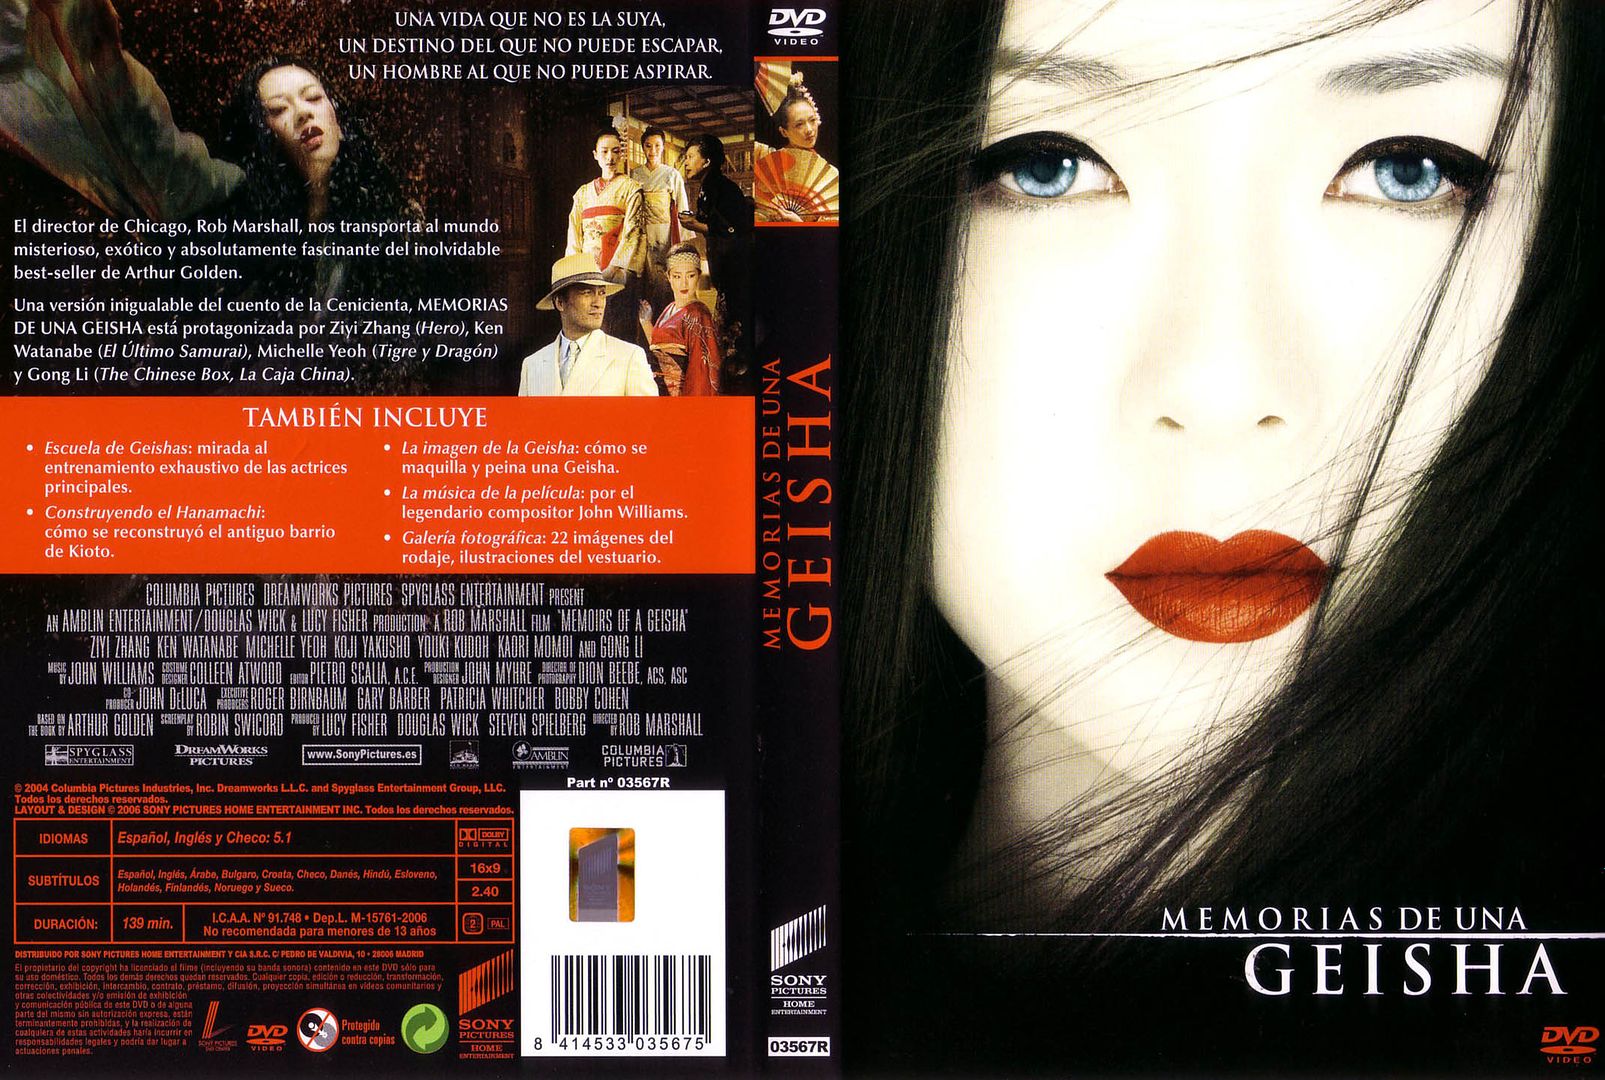 Memorias De Una Geisha Caratula - Memorias de Una Geisha Dvdrip Español (2005) Drama Romantico